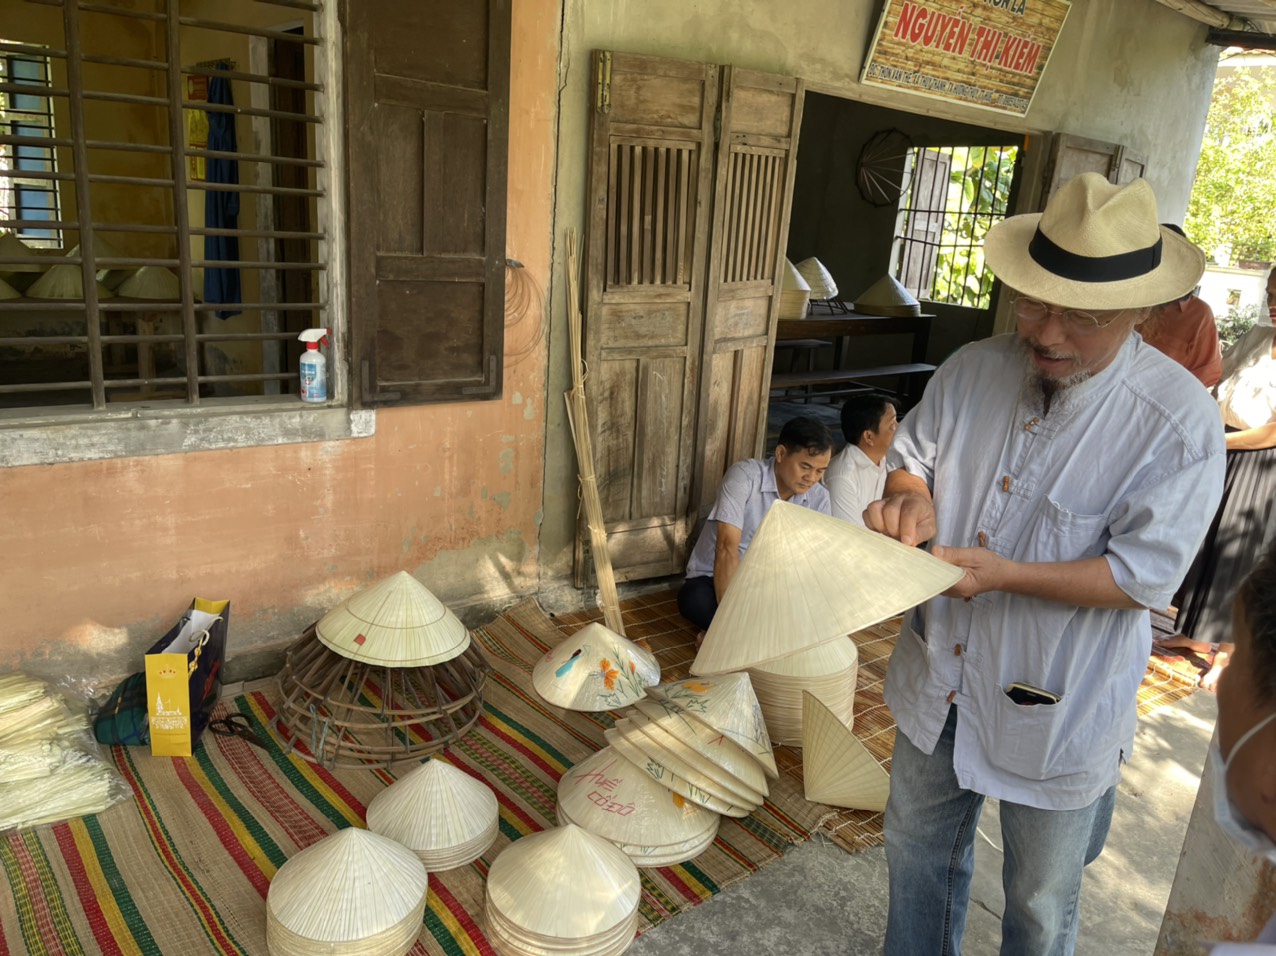 Họa sỹ Đặng Mậu Tựu góp ý, trao đổi bà con về đưa hình ảnh địa phương như Cầu ngói Thanh Toàn… trên sản phẩm nón lá làng nghề